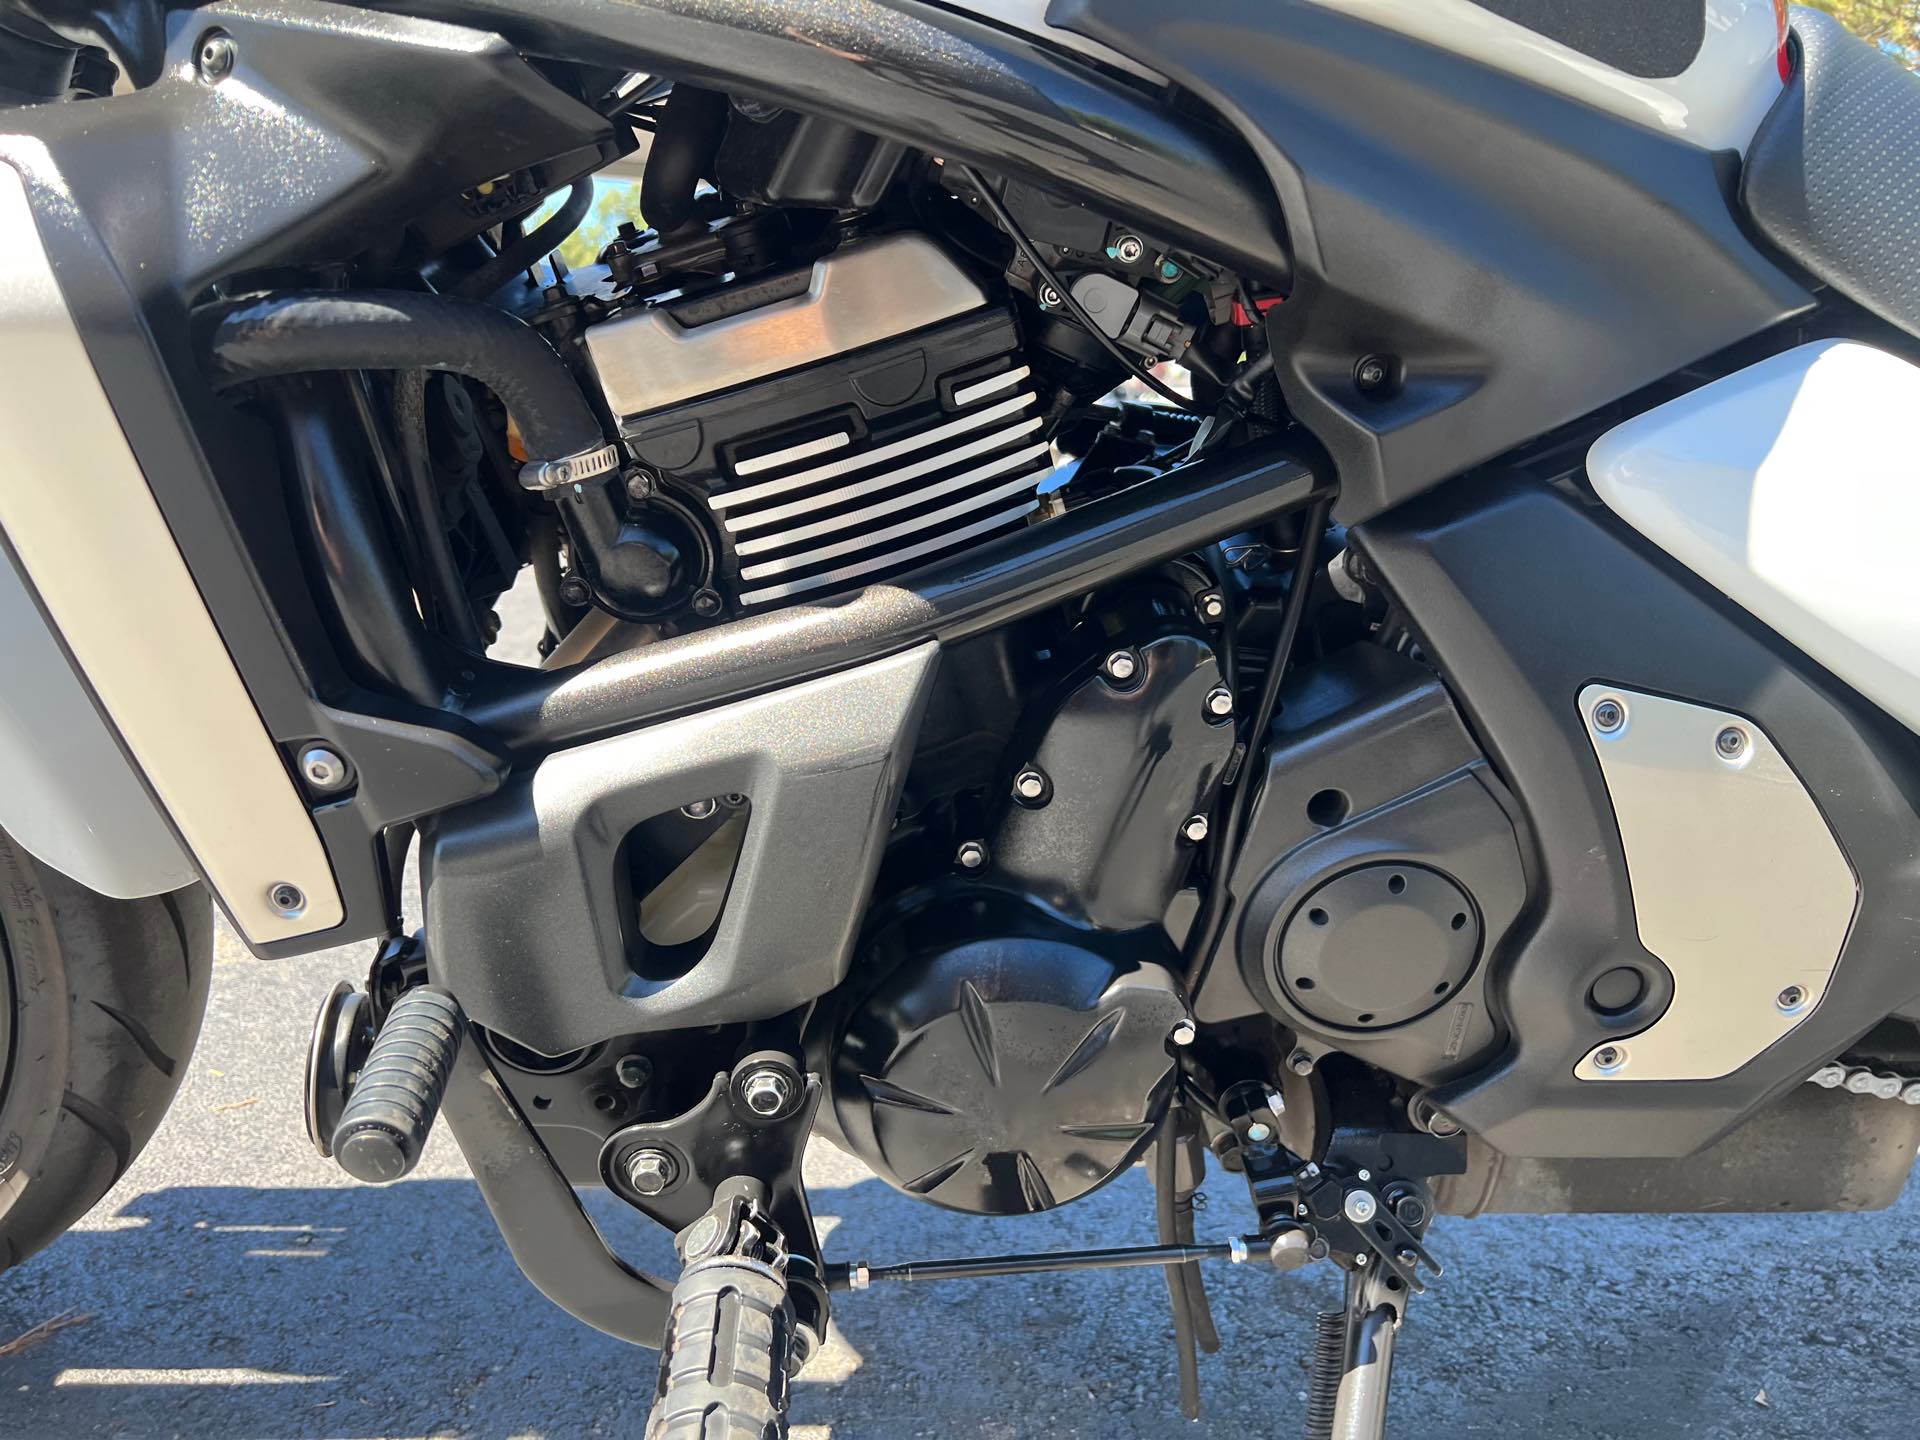 2015 Kawasaki Vulcan S Base at Aces Motorcycles - Fort Collins